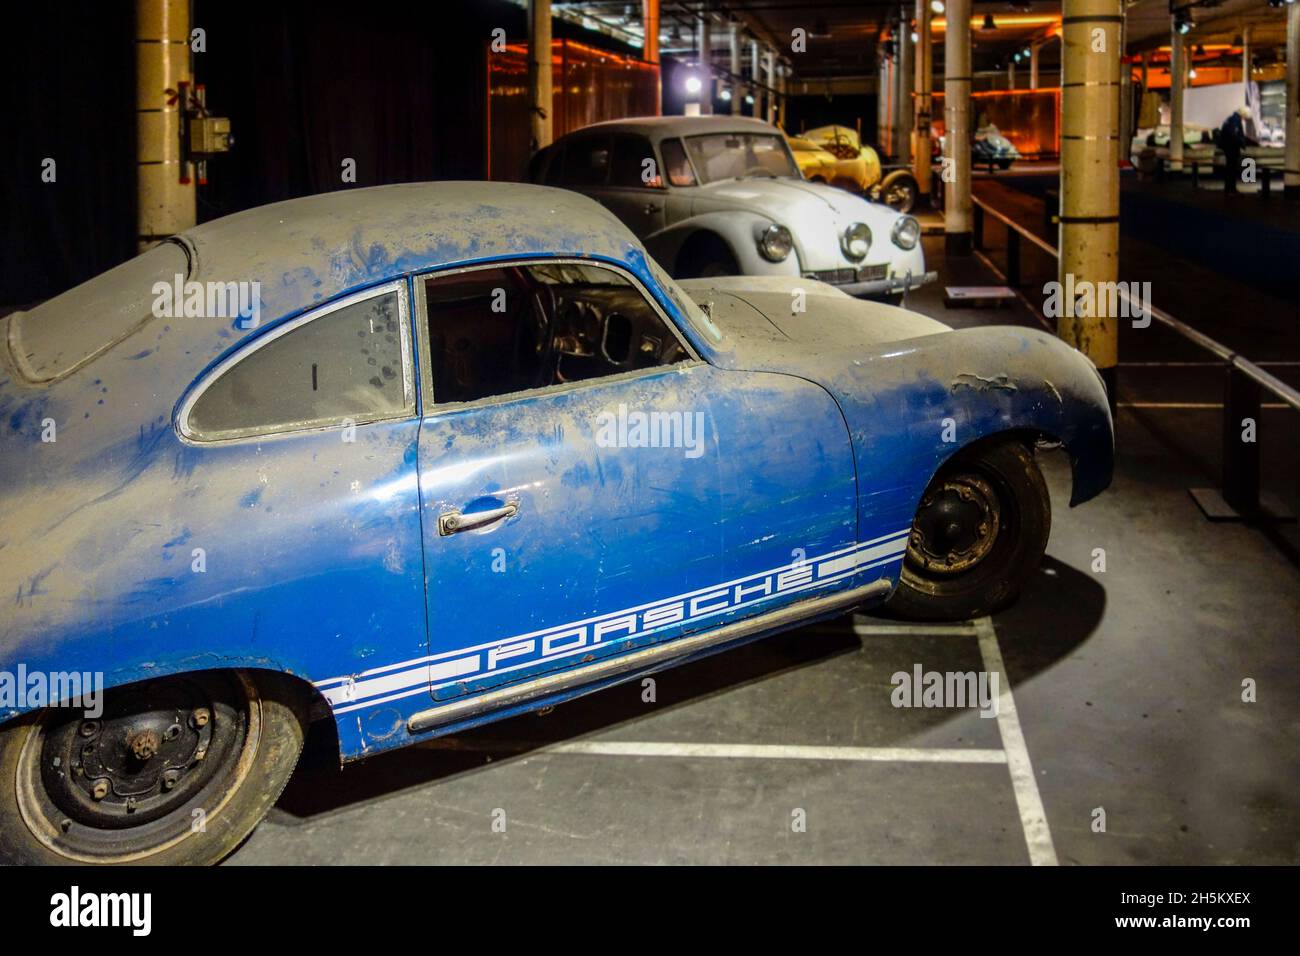 Arrugginito e polveroso 1952 Porsche 356 B, vettura sportiva classica tedesca / oldtimer, in cattivo stato pronto per essere ripristinato in garage Foto Stock